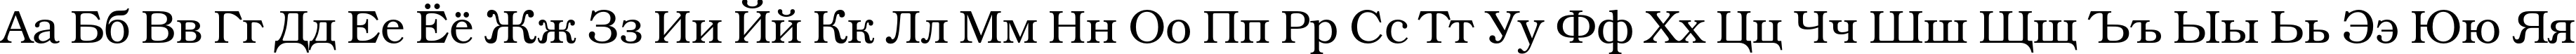 Пример написания русского алфавита шрифтом BookmanC